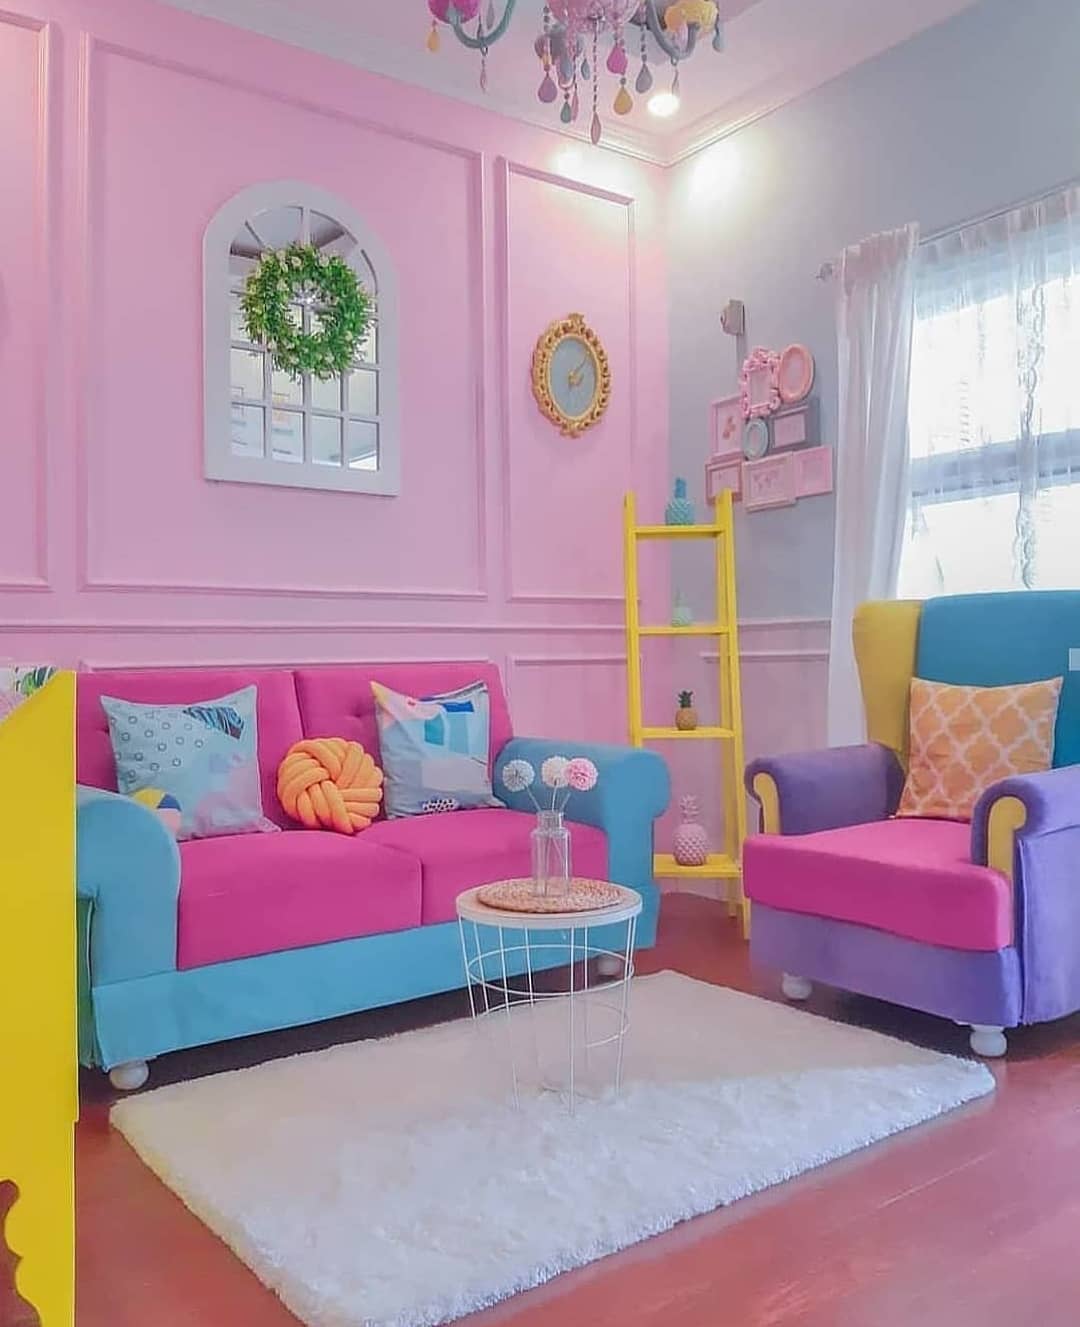 Warna Cat Tembok Ruang Tamu Yang Bagus Pink